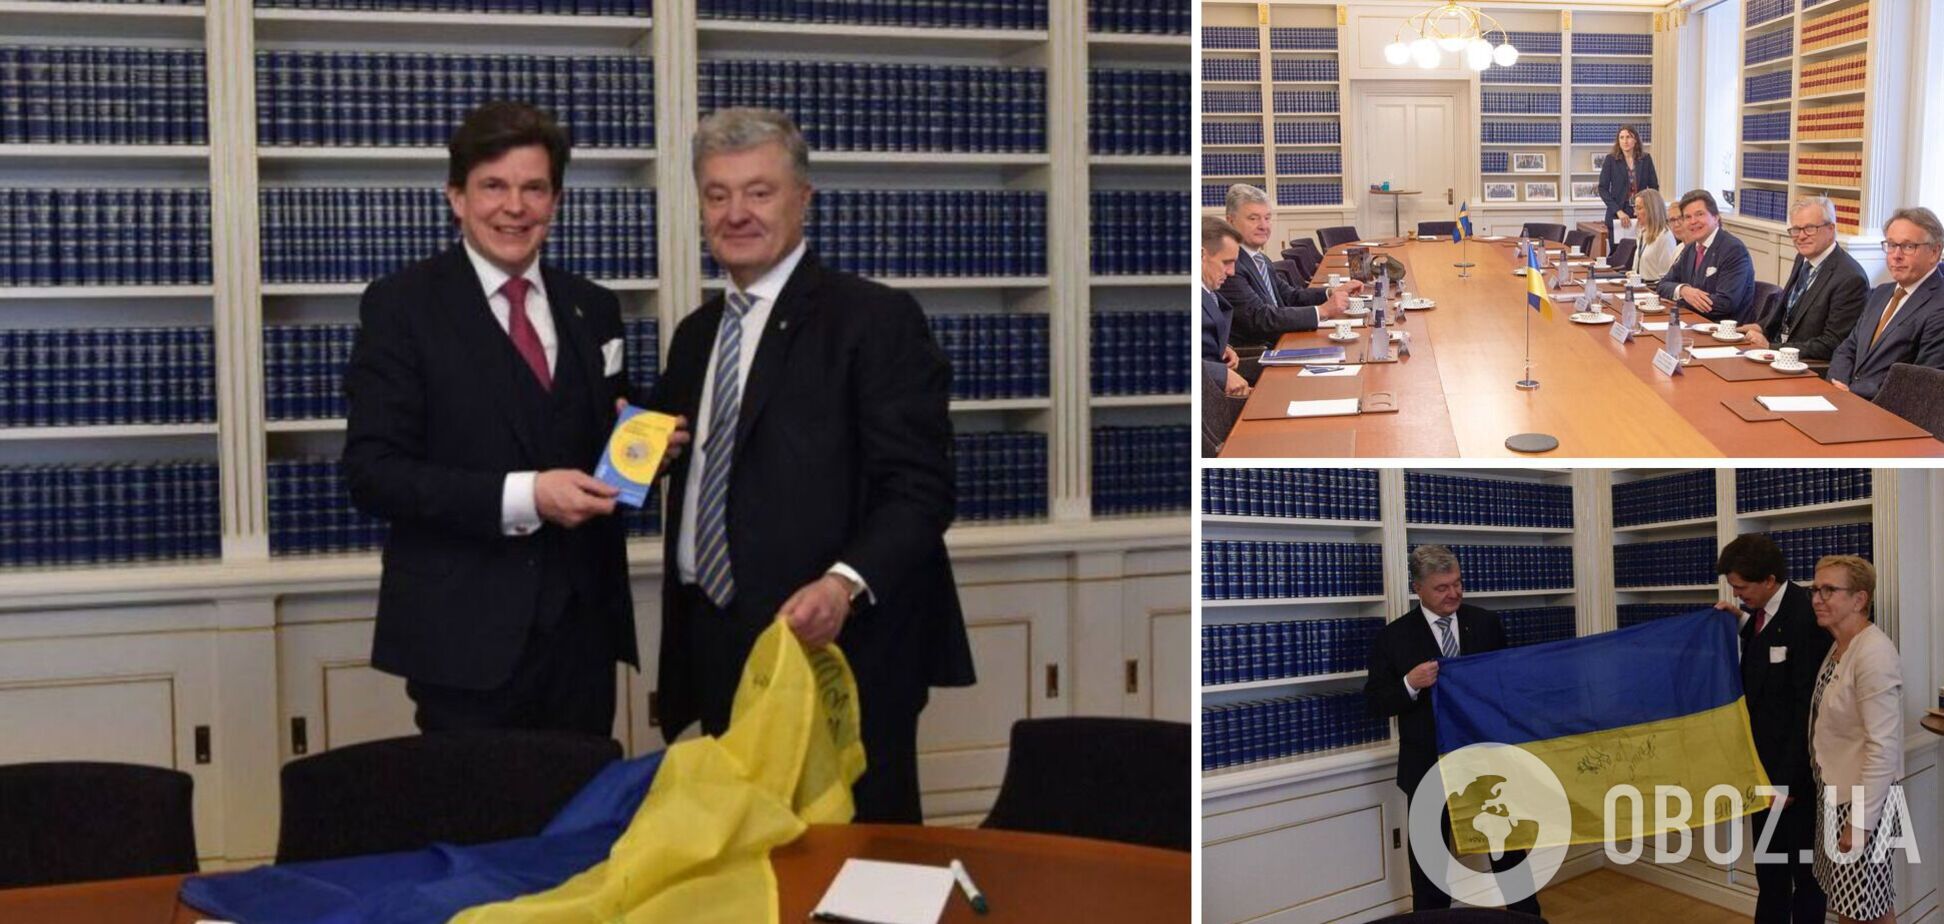 Мы ждем Gripen: Порошенко в Стокгольме обсудил поставки оружия и членство Украины в ЕС